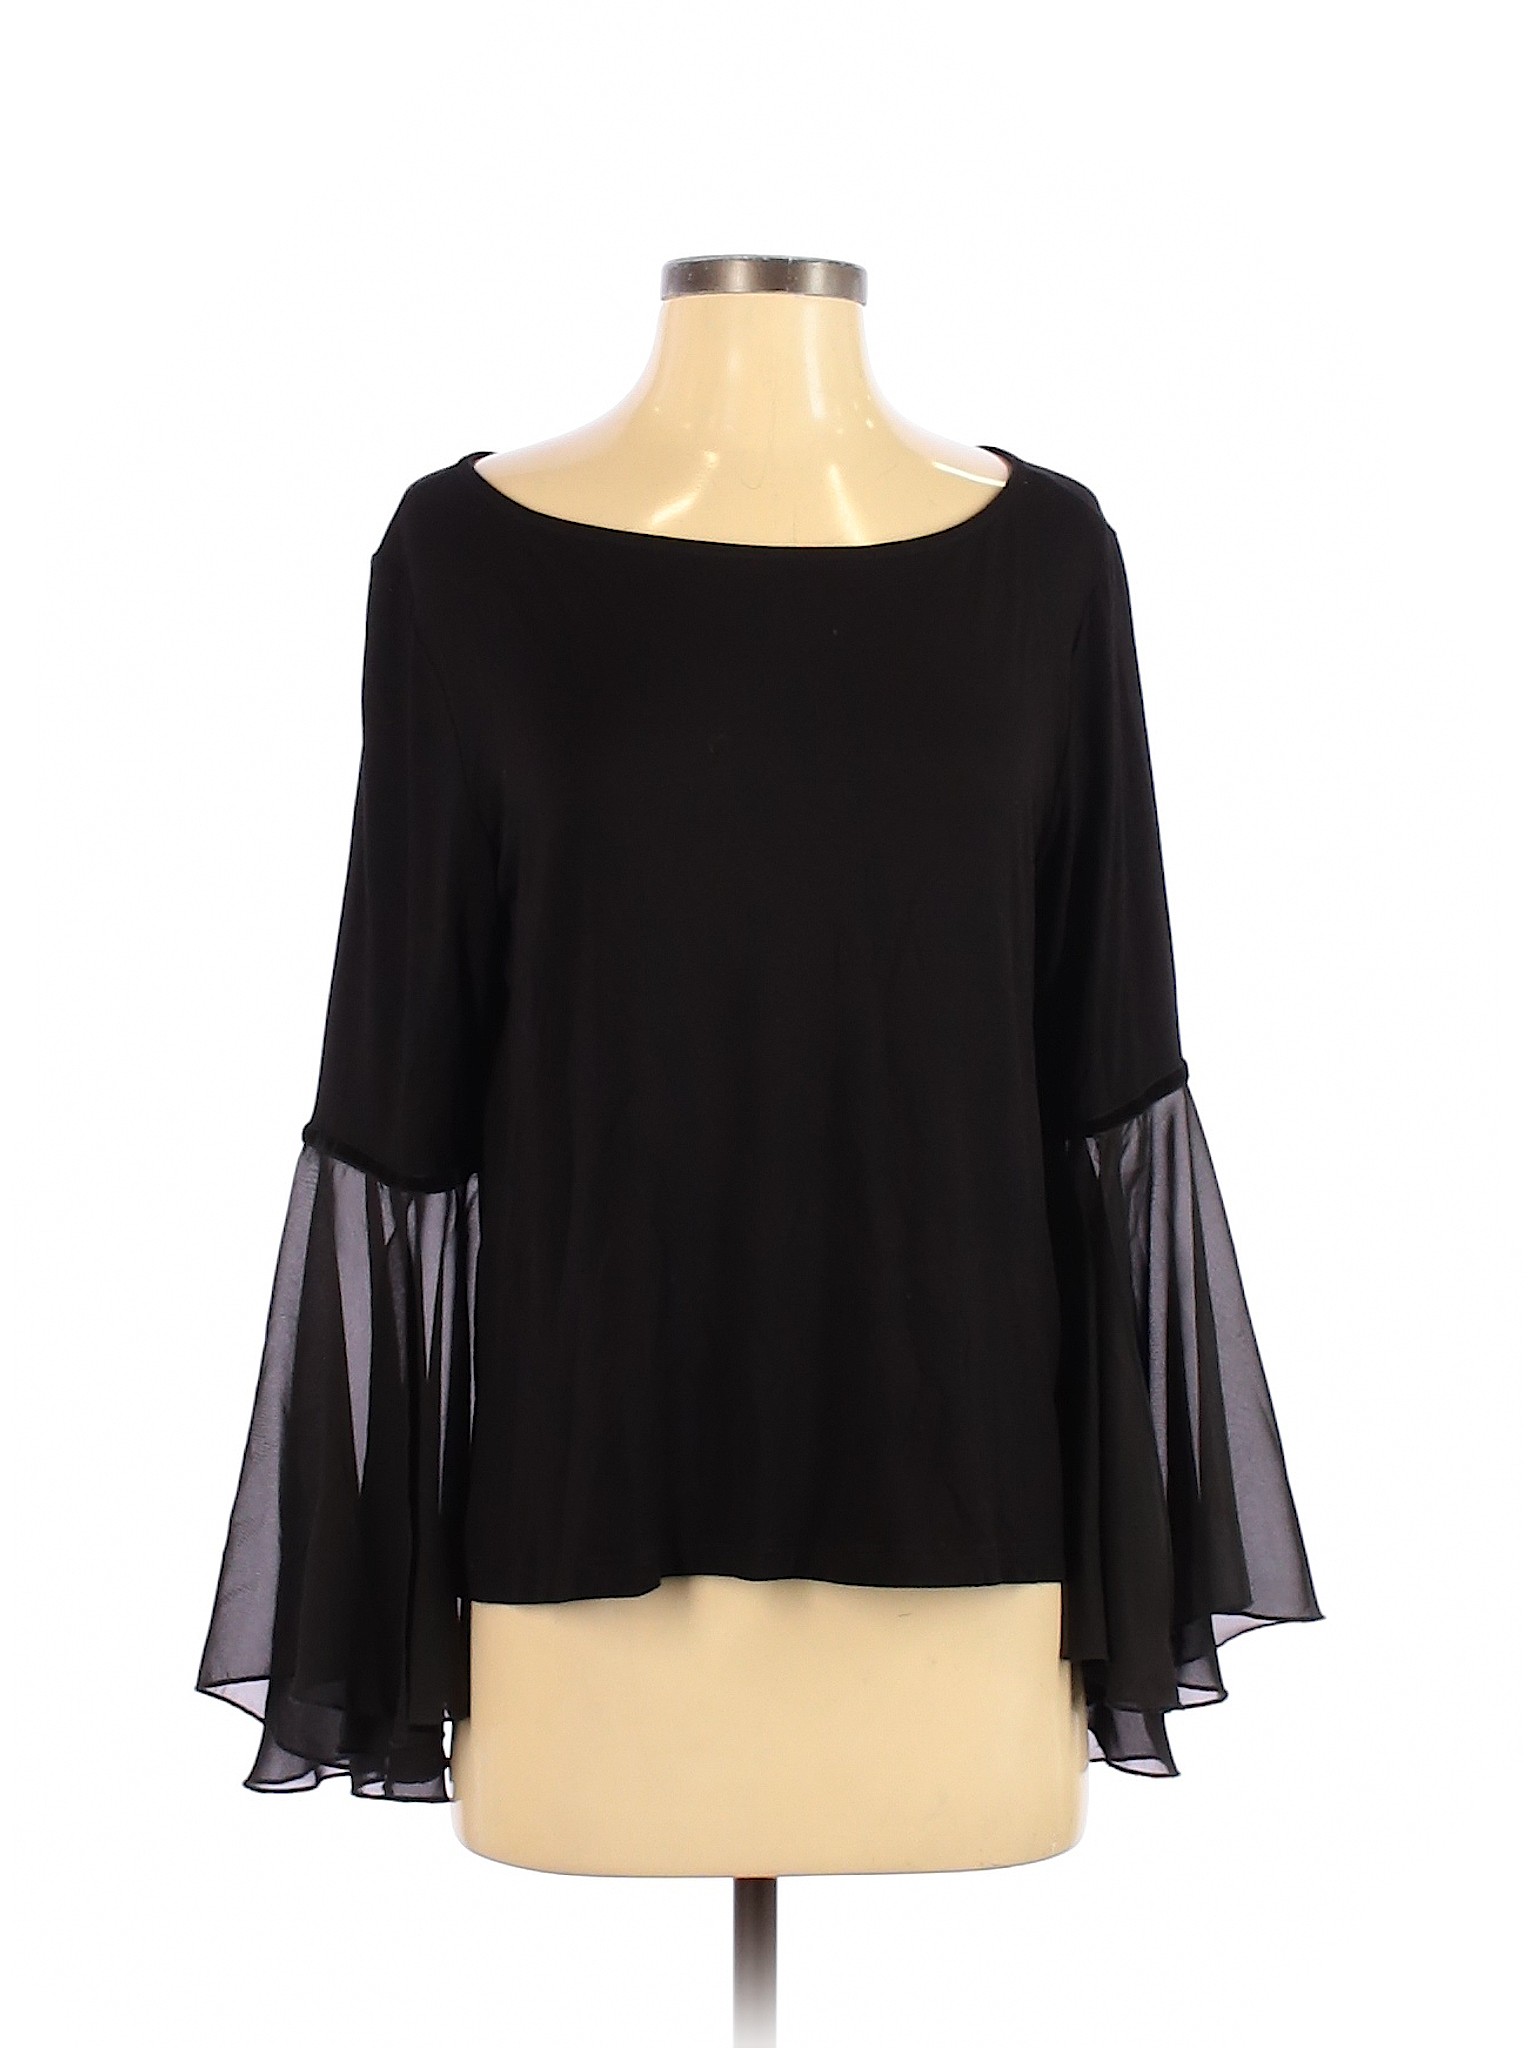 W5 Women Black Long Sleeve Top S | eBay